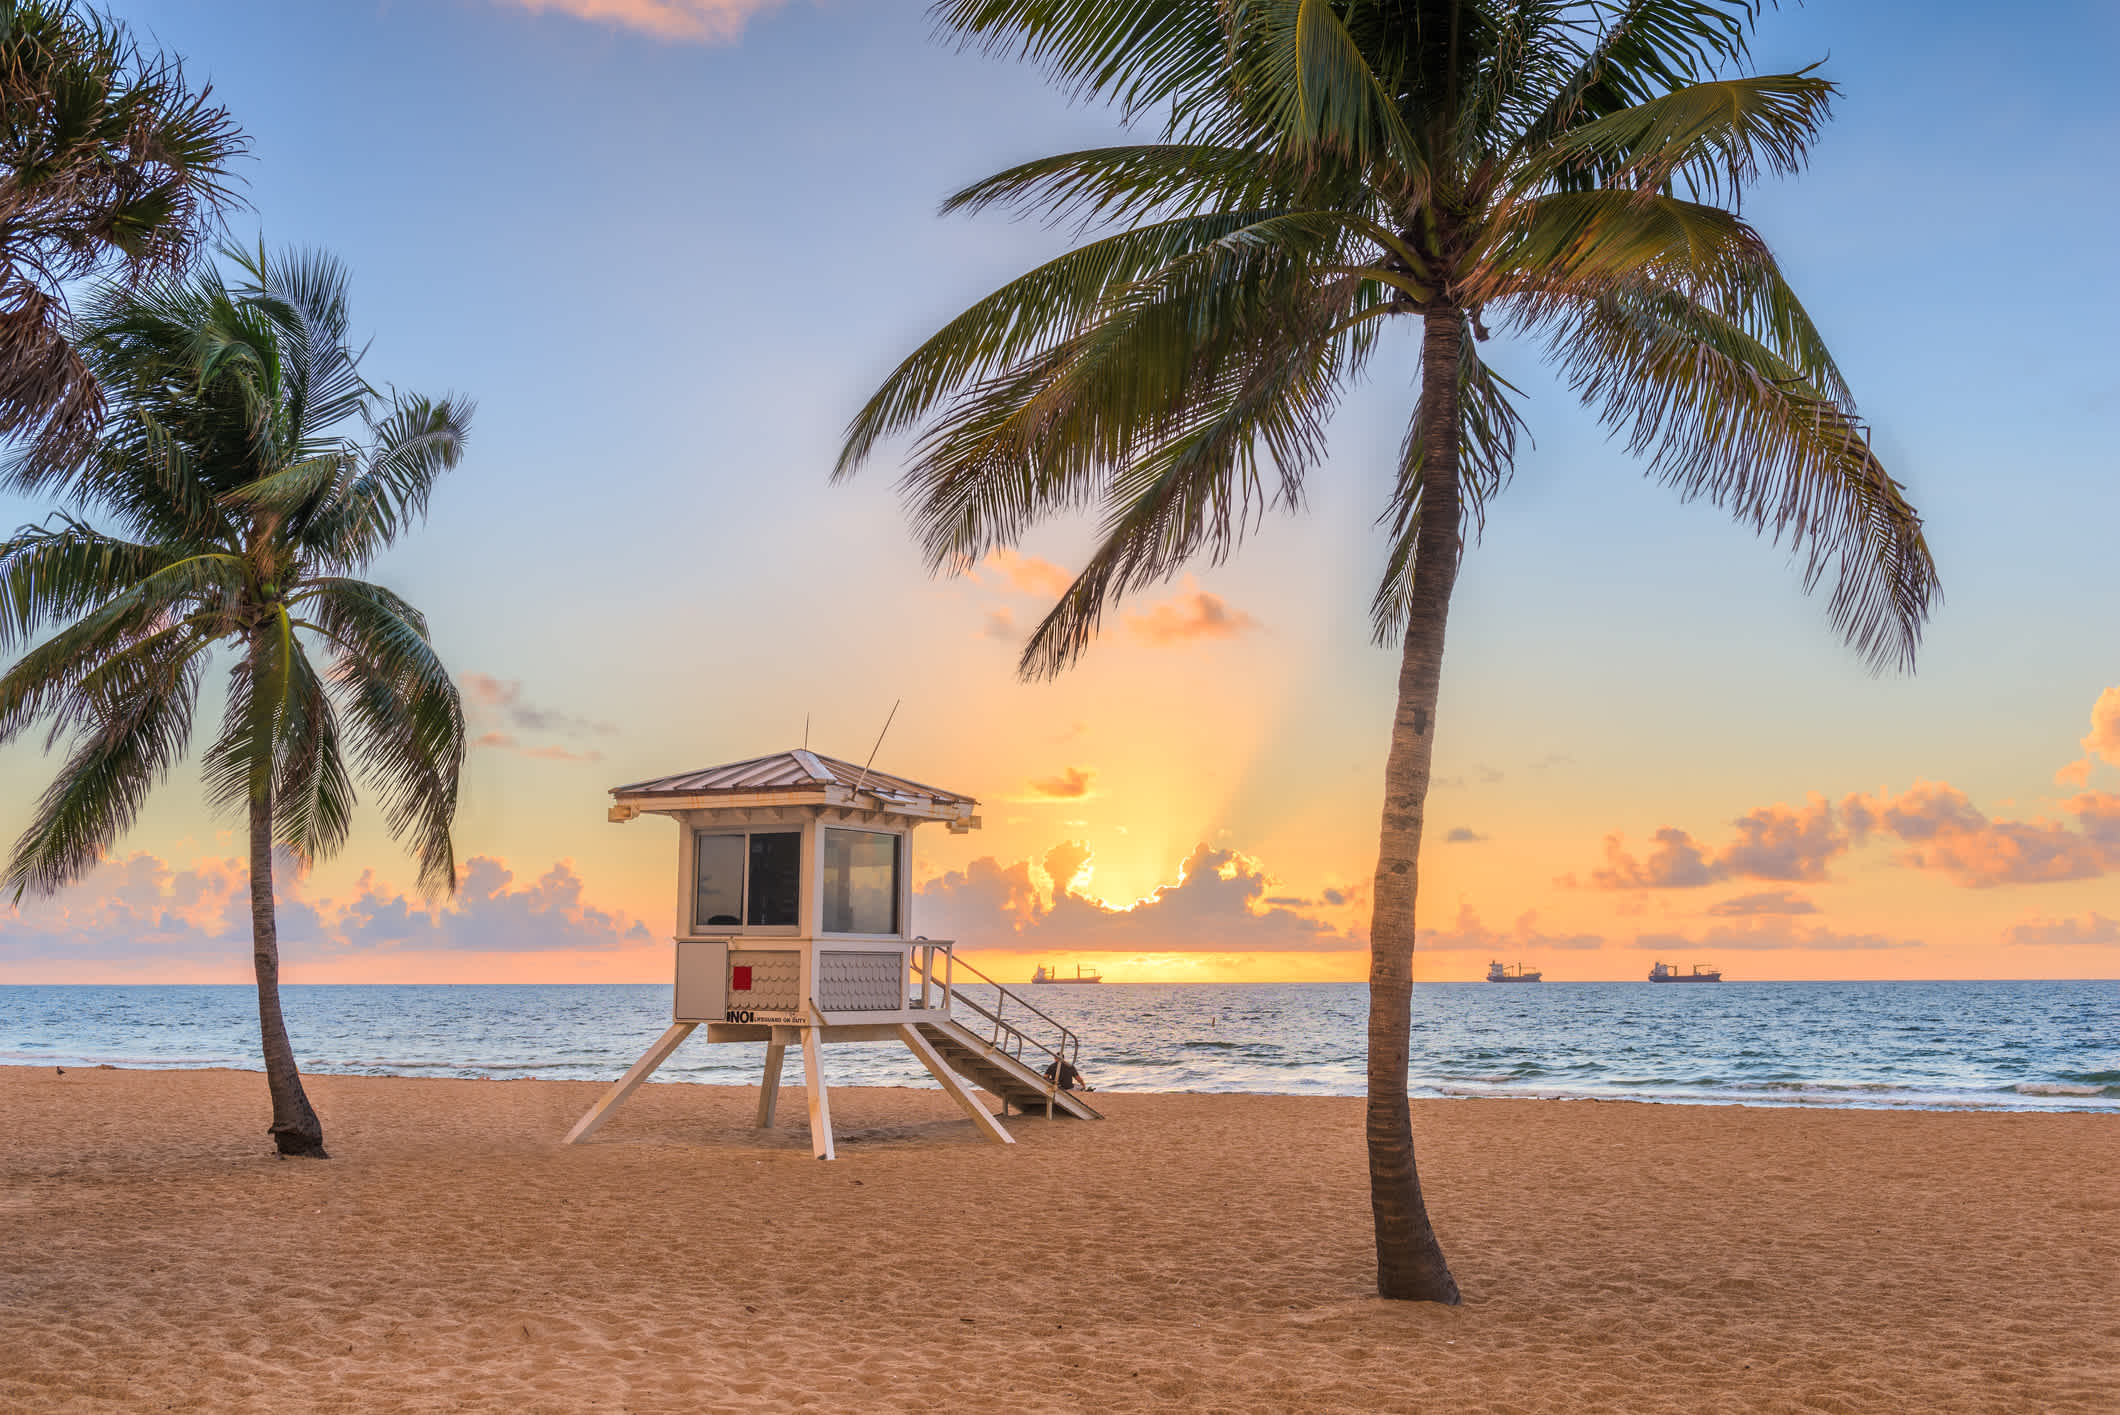 Strand von Fort Lauderdale und Life Wache Turm bei Sonnenaufgang, Florida, USA.